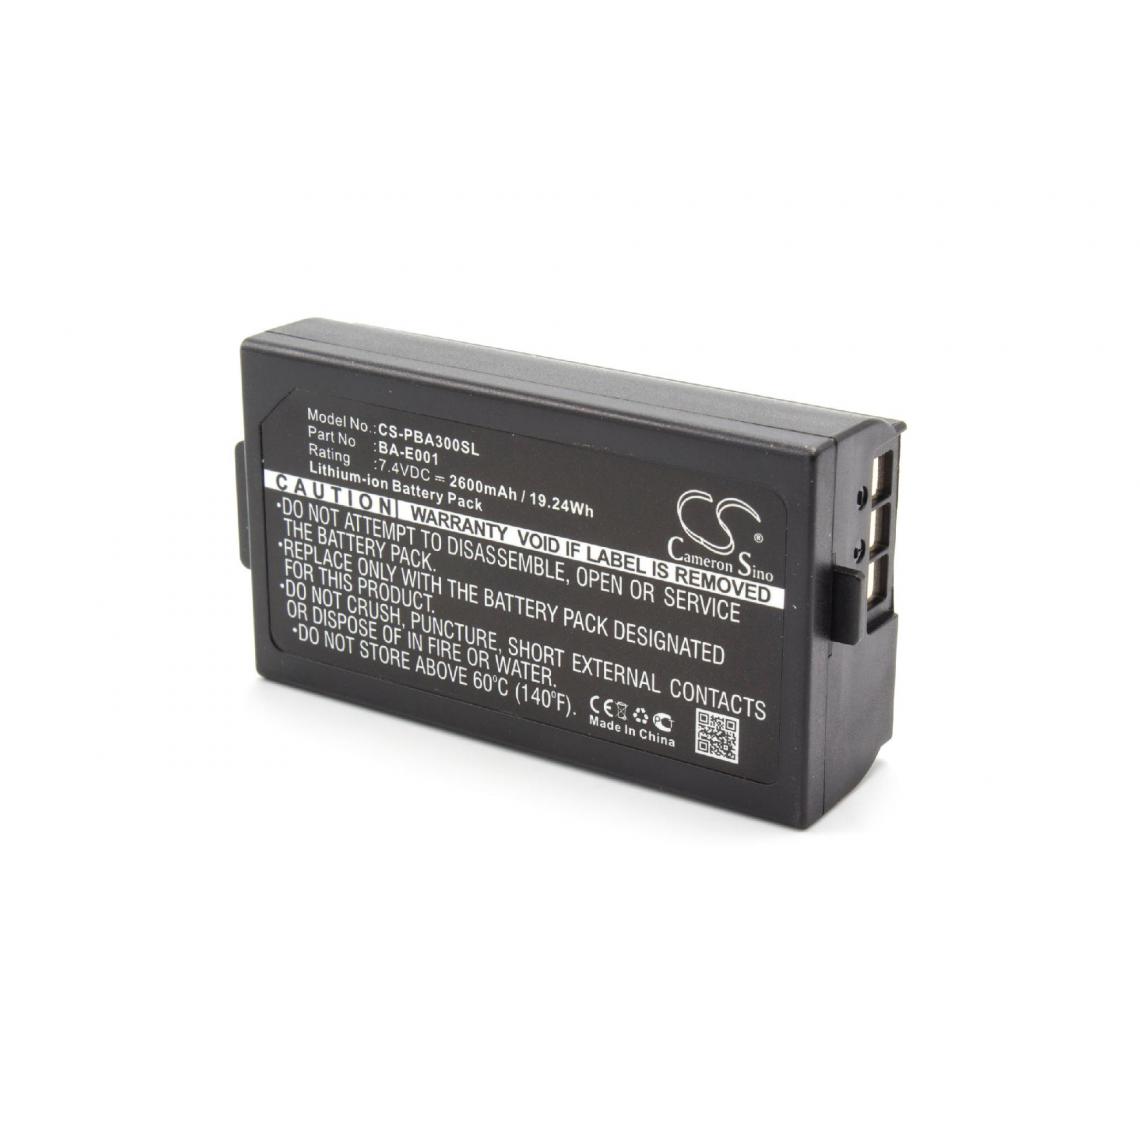 Vhbw - vhbw Li-Ion batterie 2600mAh (7.4V) pour imprimante photocopieur scanner imprimante à étiquette Brother P-Touch PT-P750WVP EDGE - Imprimante Jet d'encre